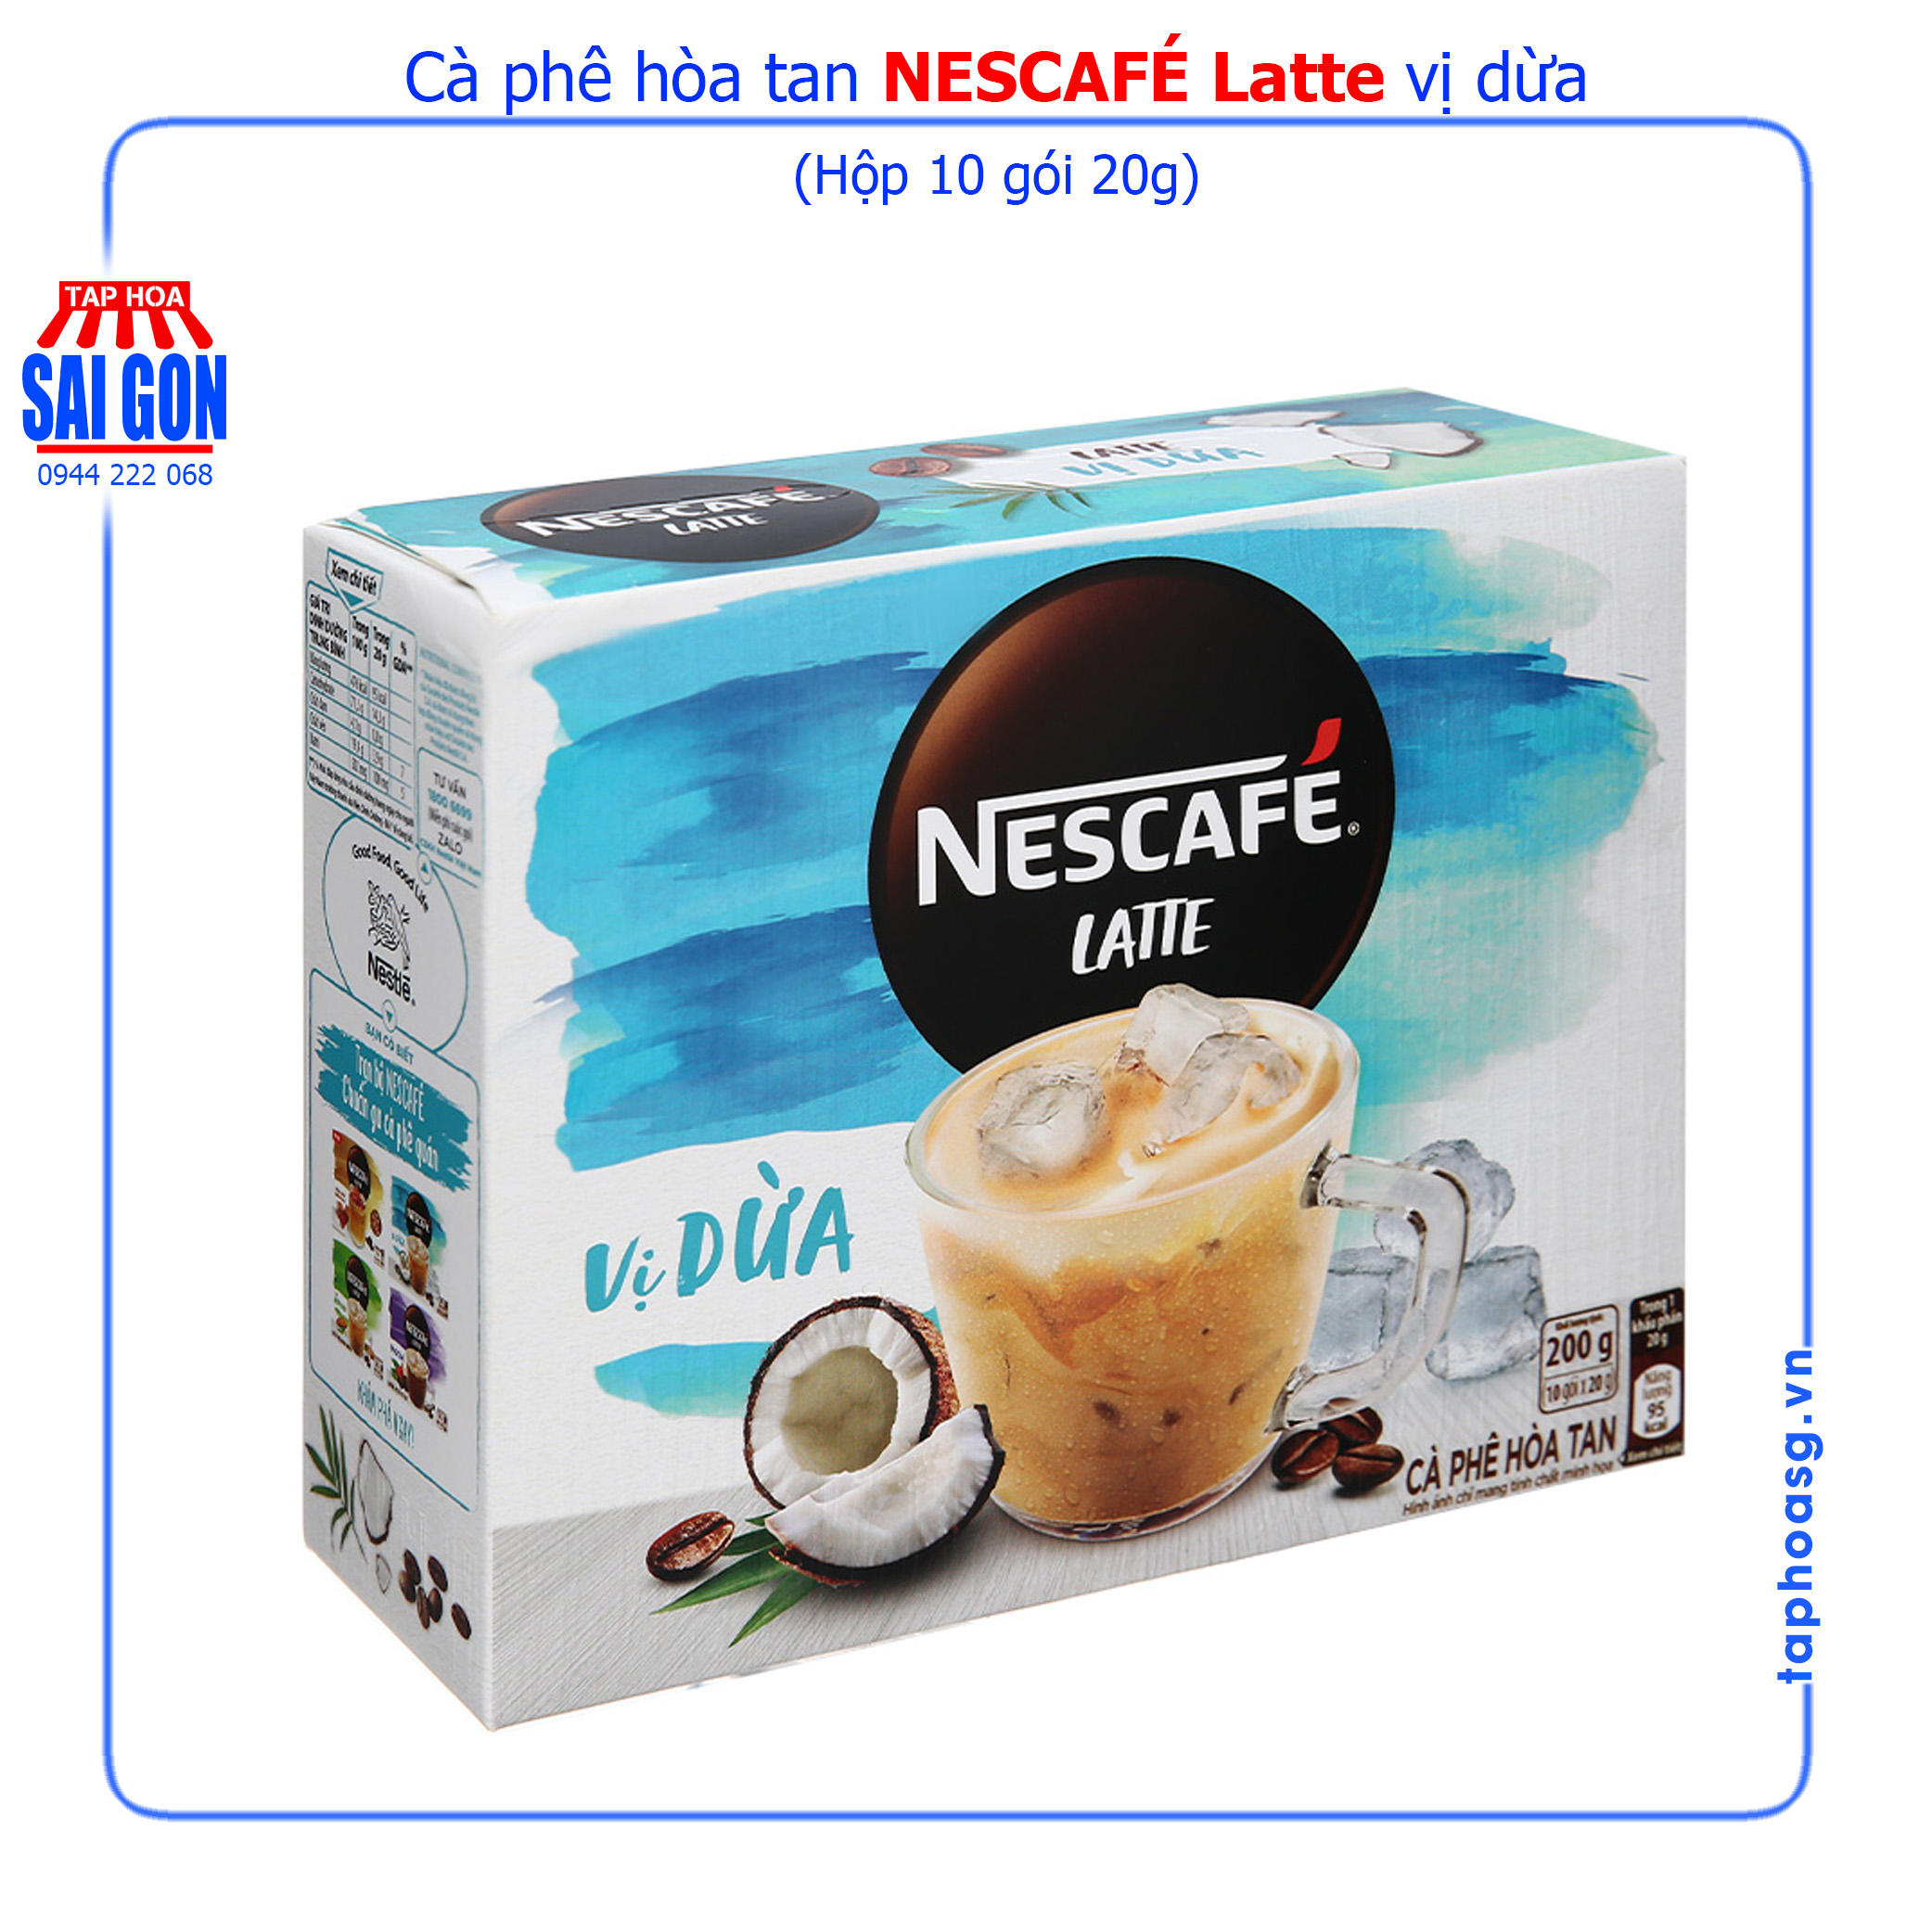 Cà phê hòa tan NesCafé Latte vị dừa hộp 200g mang hương vị nhiệt đới thơm